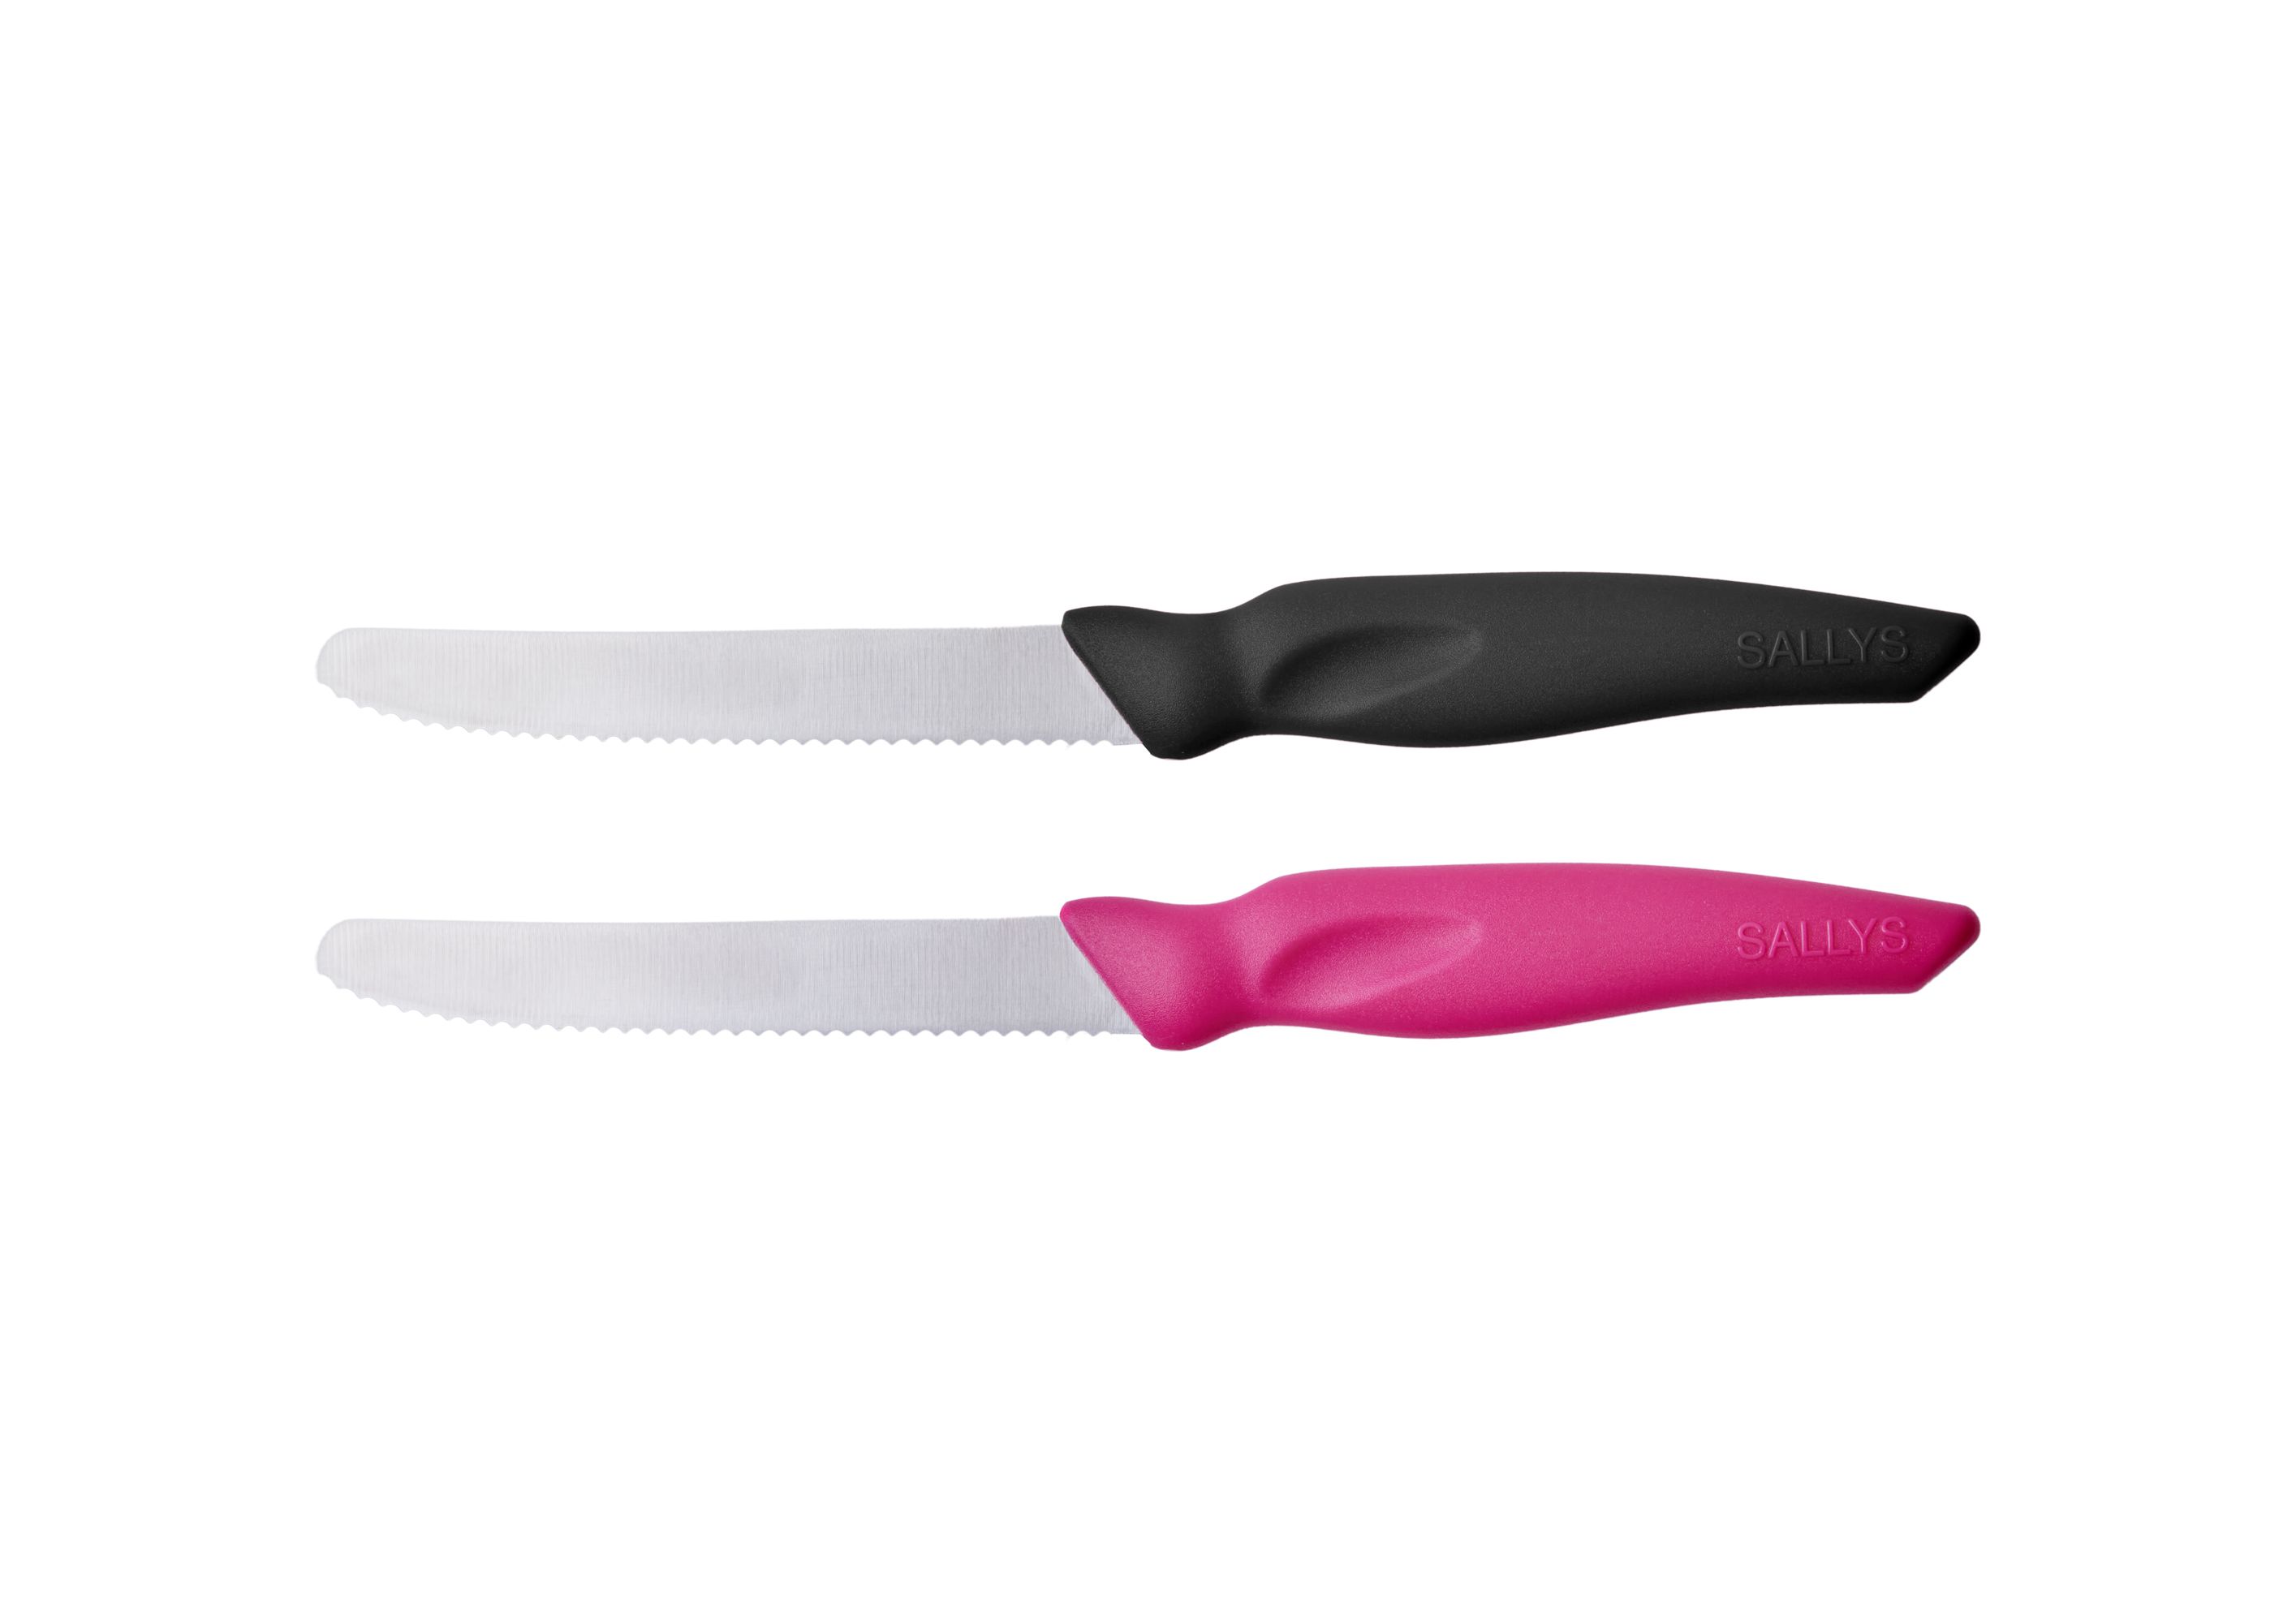 Zwei silberne Messer mit pinkem und schwarzem Griff